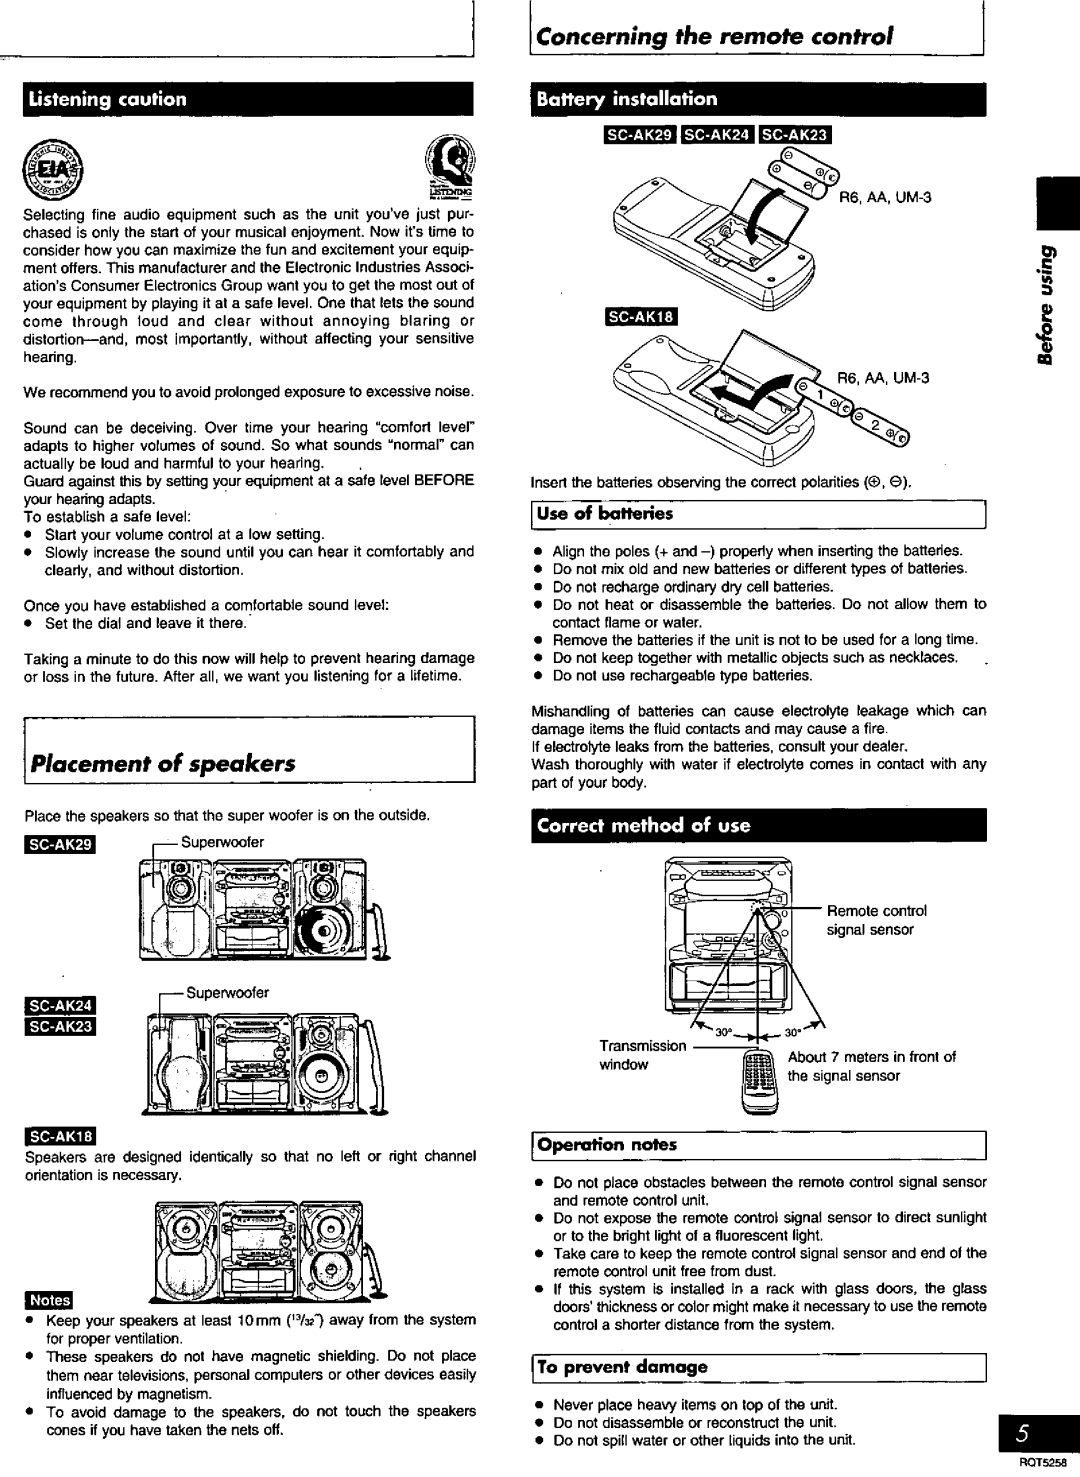 Panasonic SC-AK18, SC-AK24, SC-AK29, SC-AK23 manual 